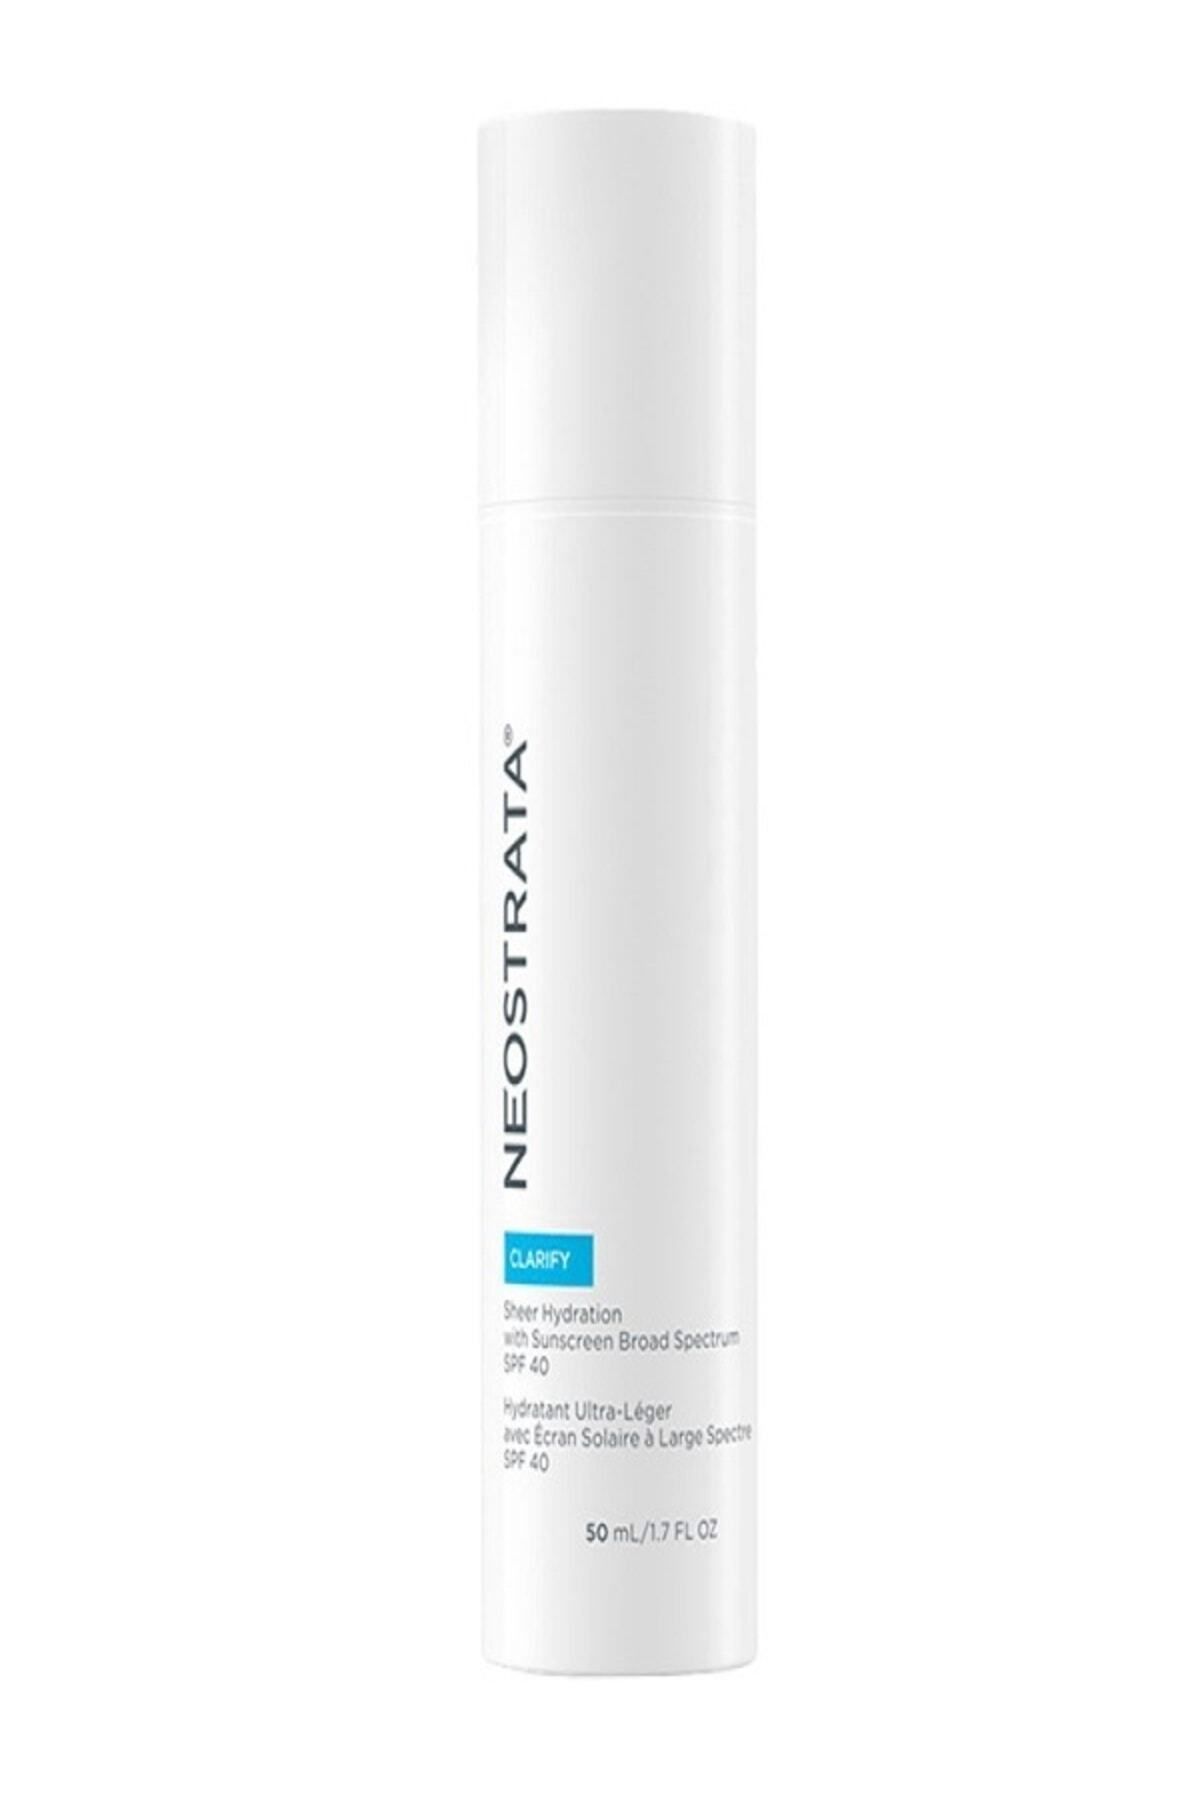 NeoStrata Clarify - SPF40 Sunscreen Cream for Oily Skin with Vitamin E 50 ml SHİNEE245